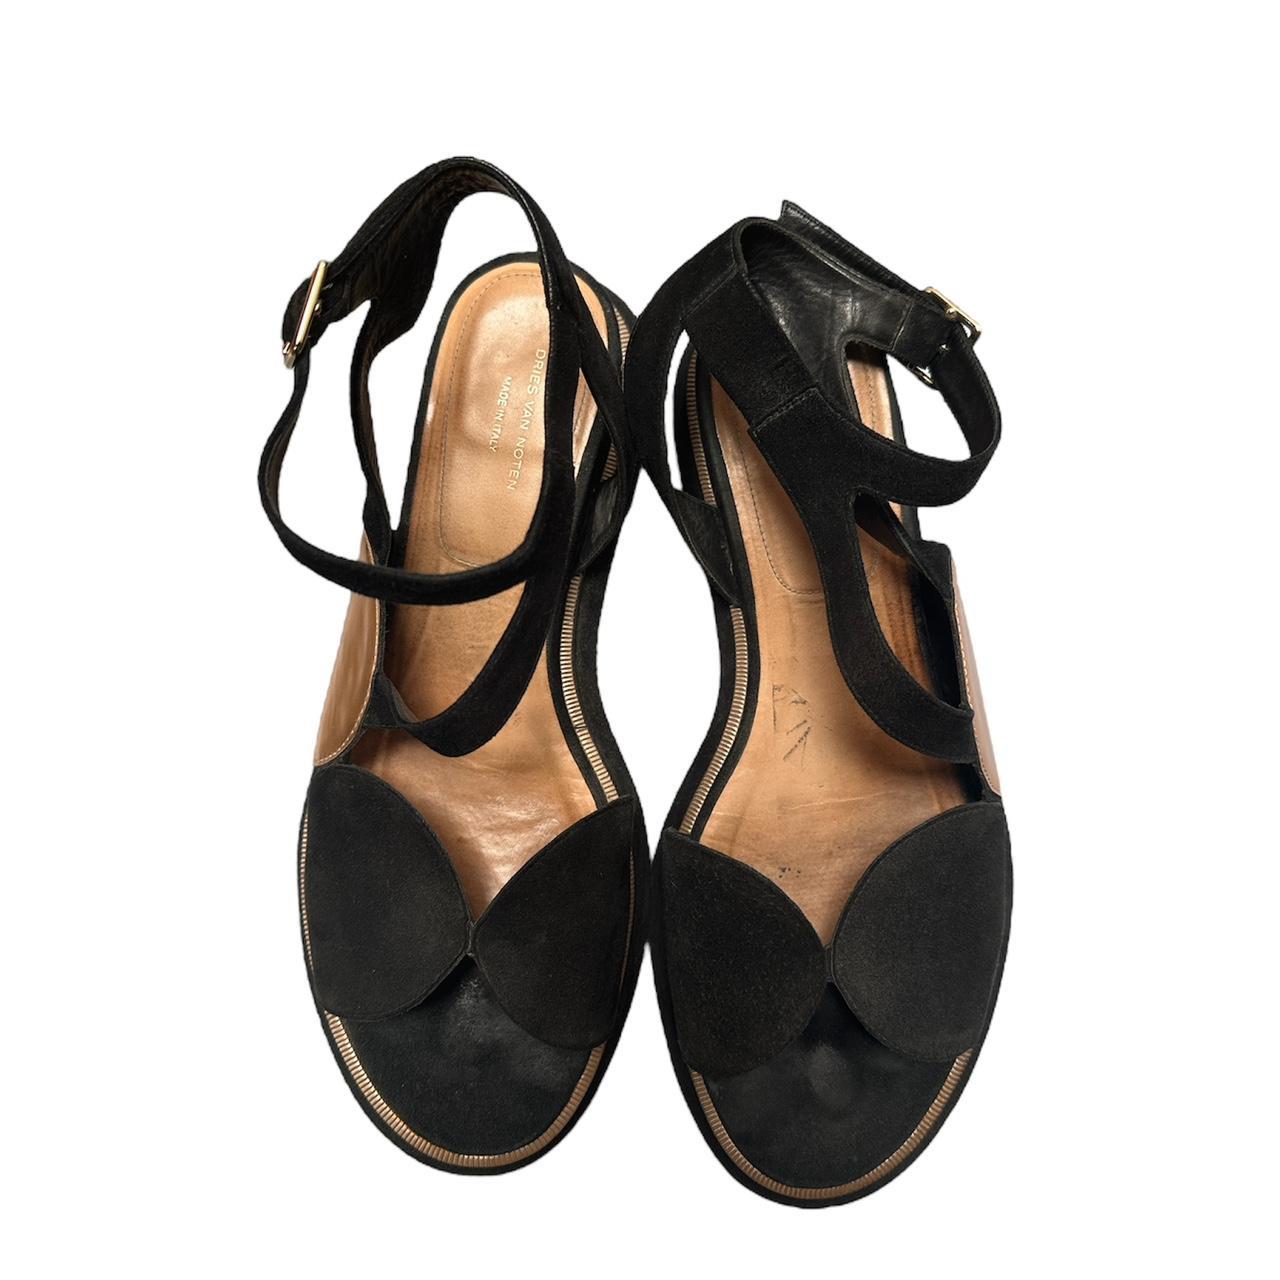 Dries Van Noten Women's Black and Gold Sandals